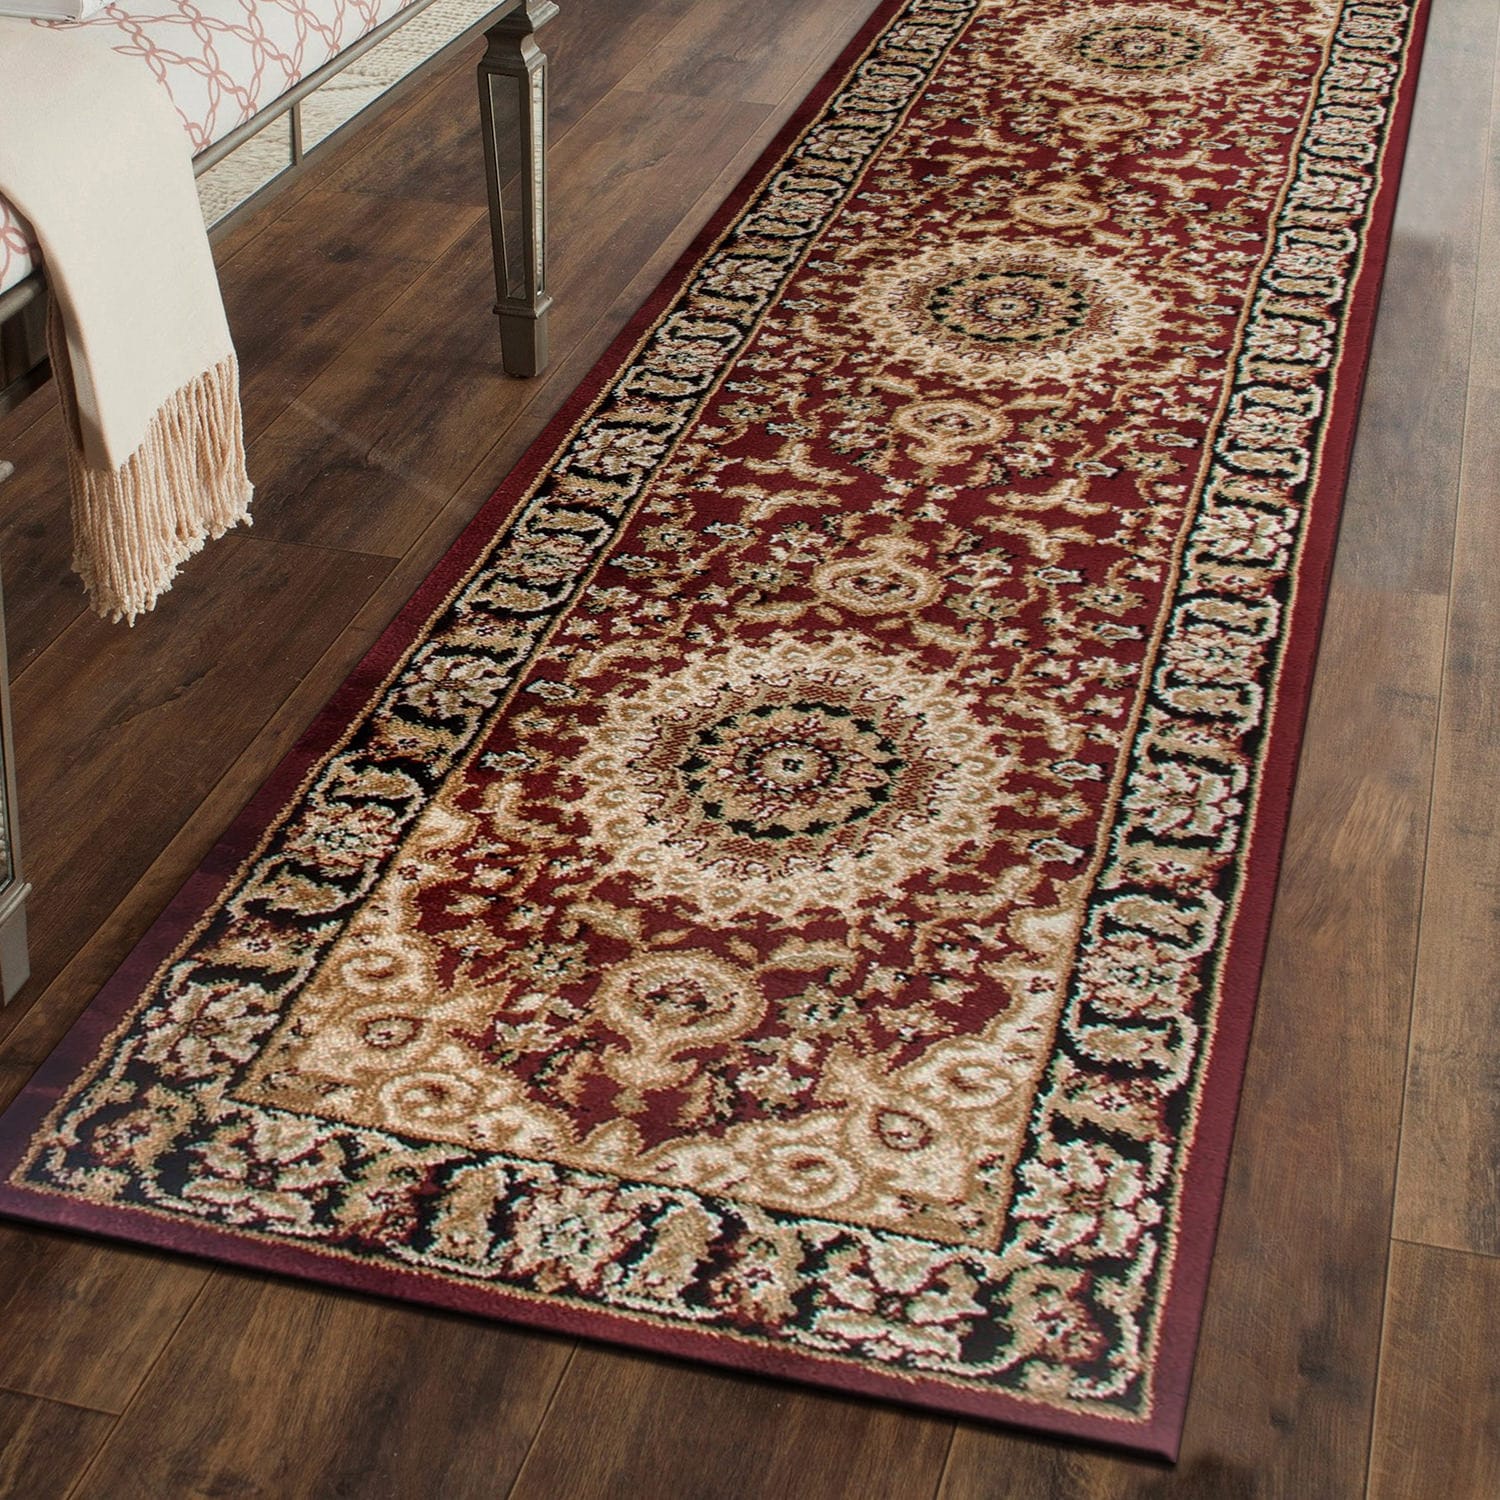 Burgundy & White Indoor or Outdoor Floor Mat - Rope Doormat